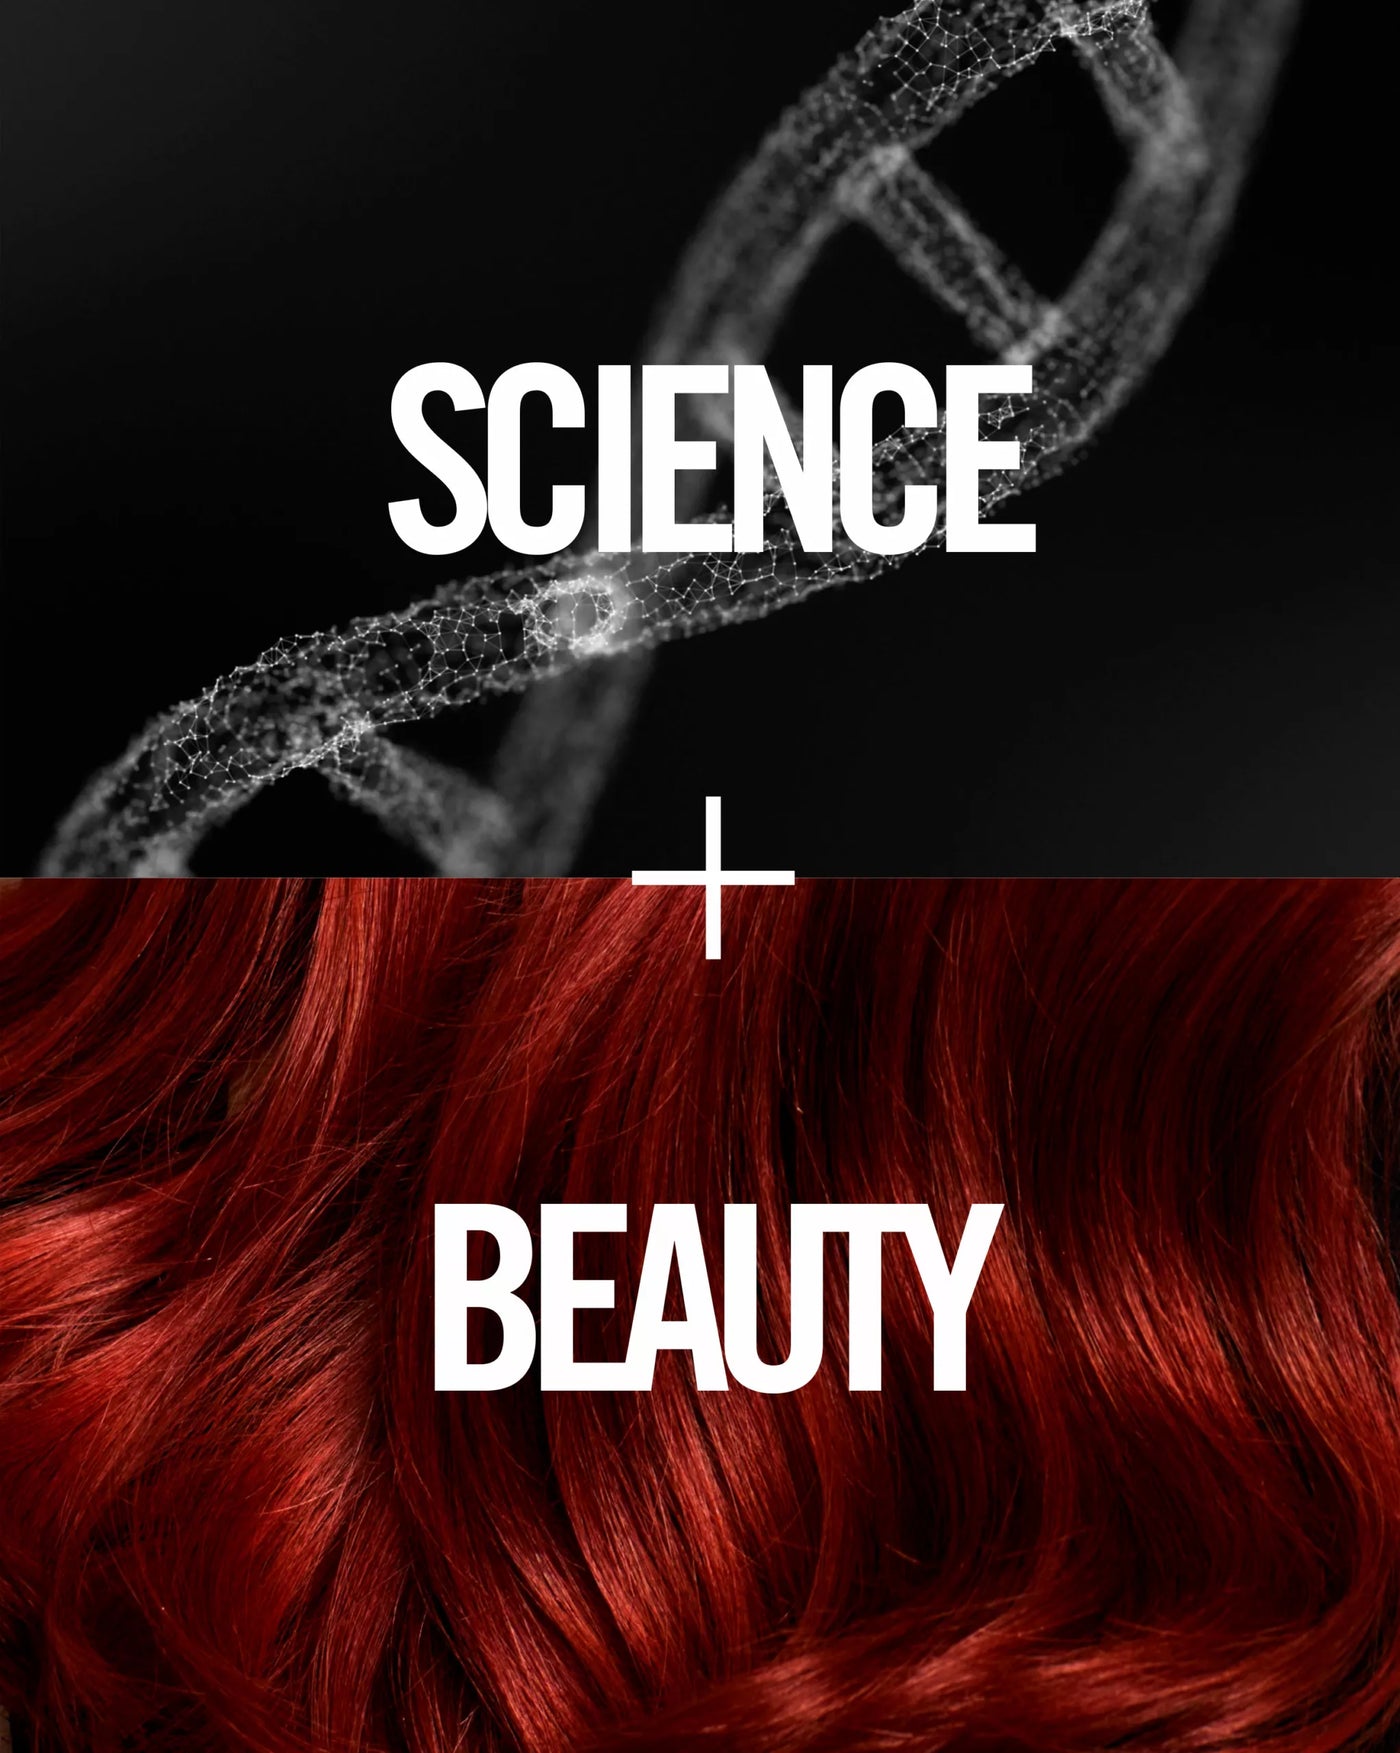 Revlonissimo Colorsmetique™ Permanent Hair Color Reds